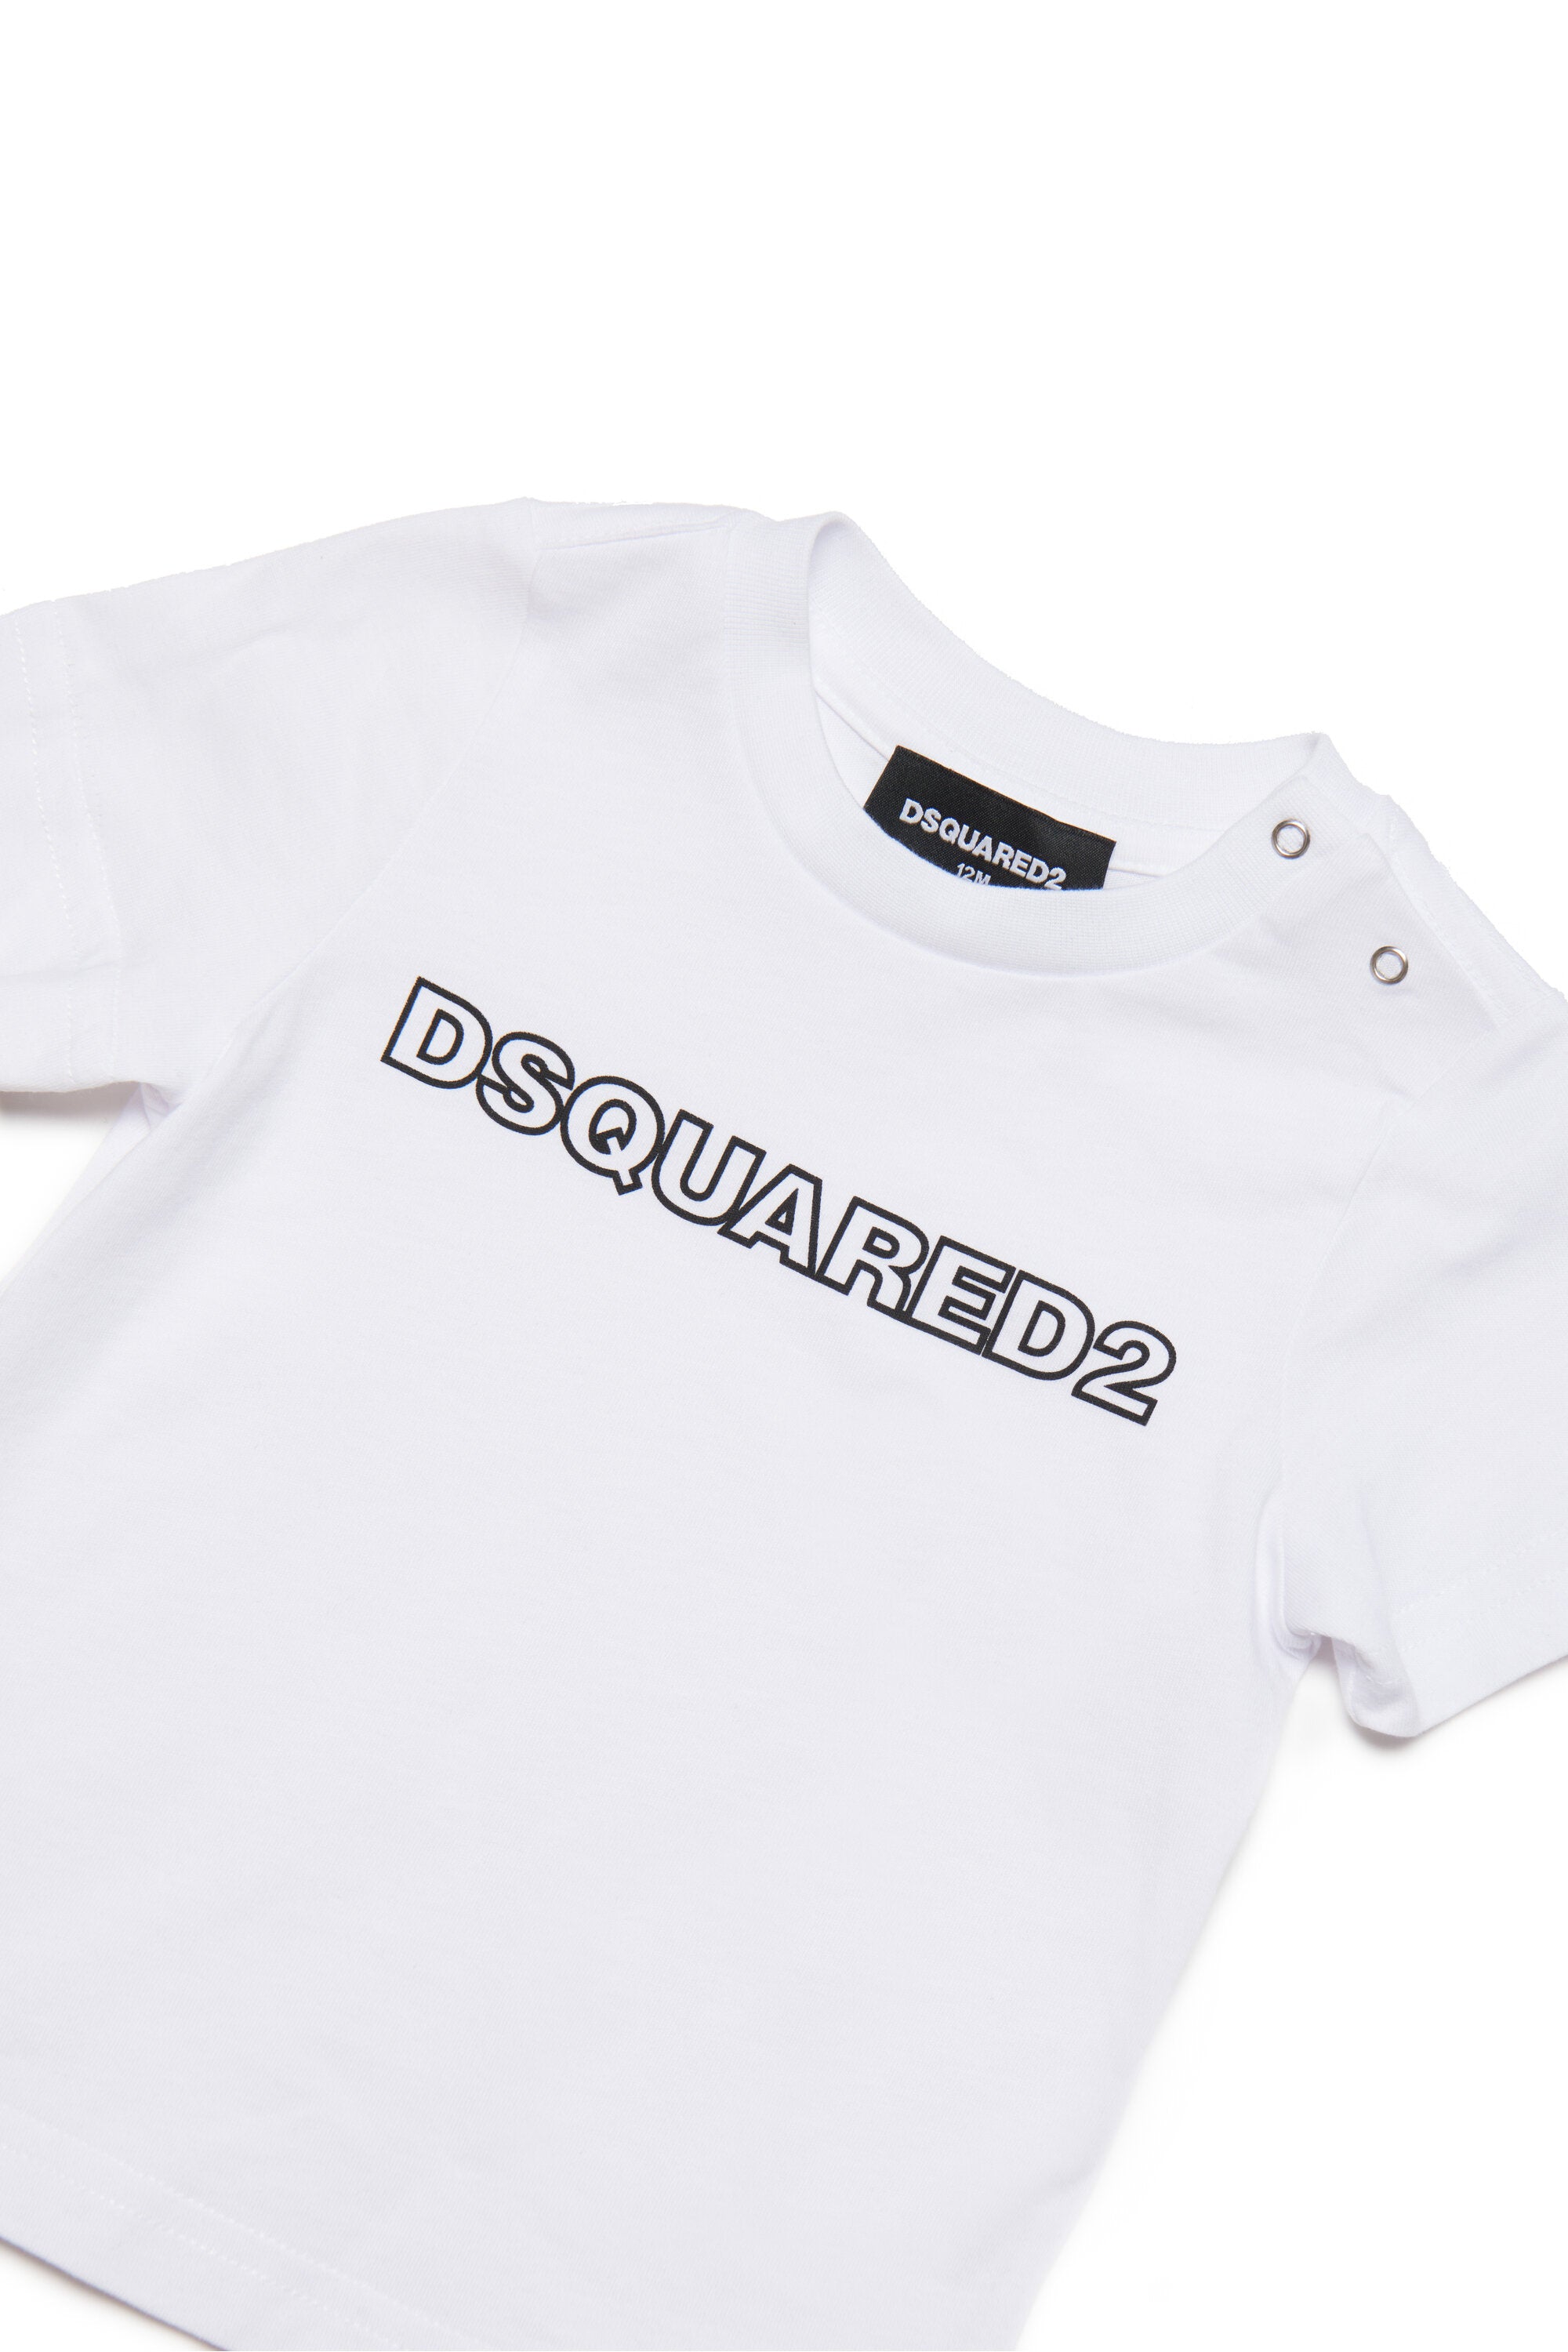 DSQUARED2 キッド ロゴ入りクルーネック ジャージーTシャツ | Brave Kid